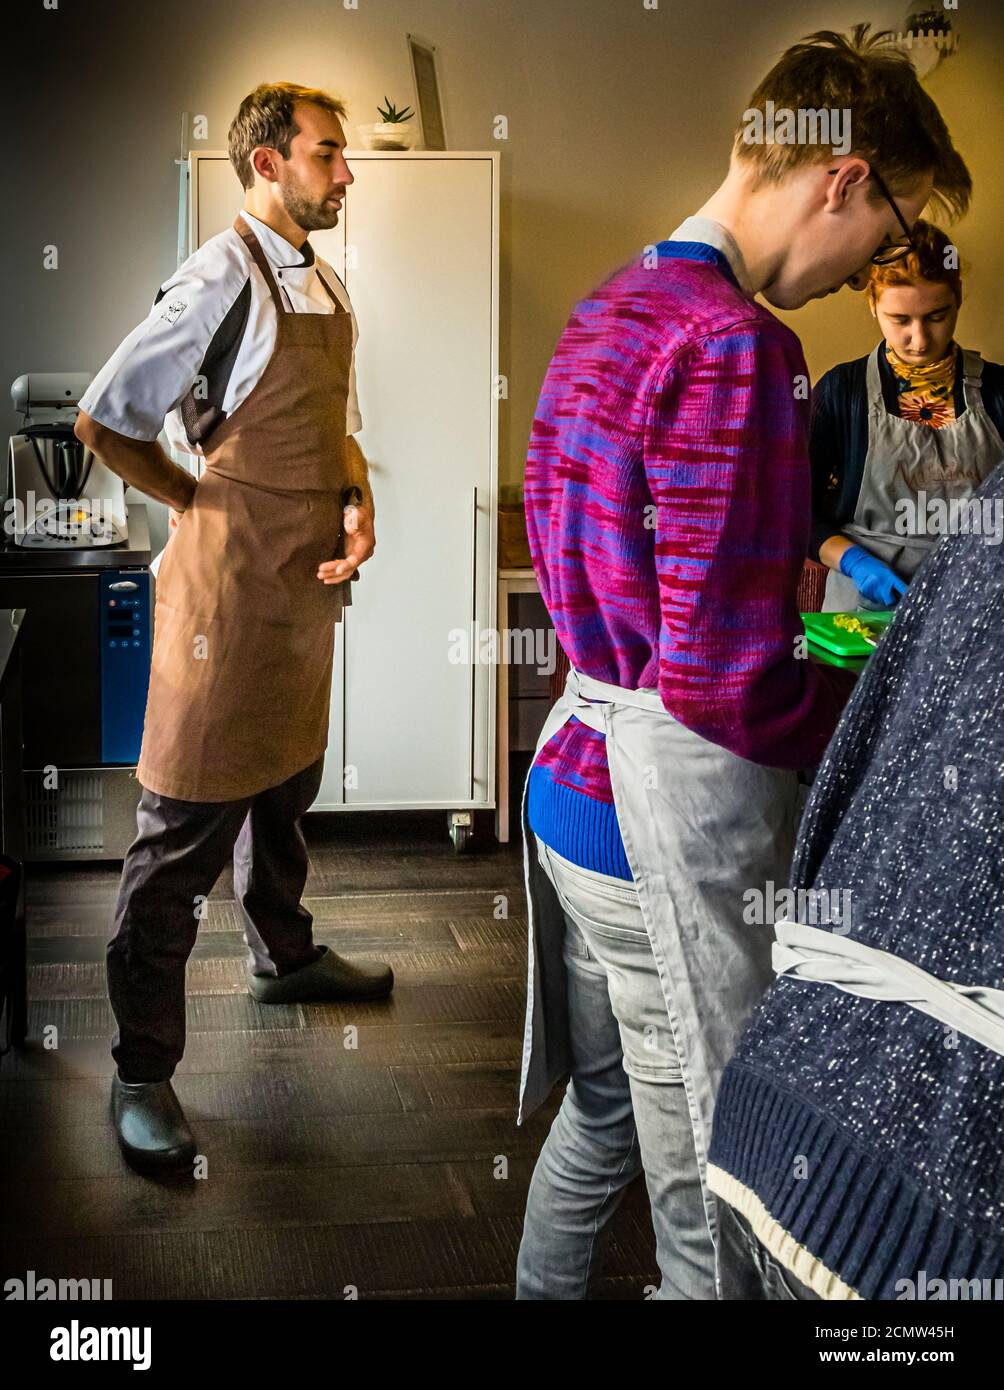 Laszlo Papdi spiega la tecnica di taglio in cucina durante un corso presso l'Istituto culinario di Budapest, Ungheria. L'atteggiamento interiore ed esteriore è importante per Laszlo Papdi non solo nella danza ma anche in cucina Foto Stock